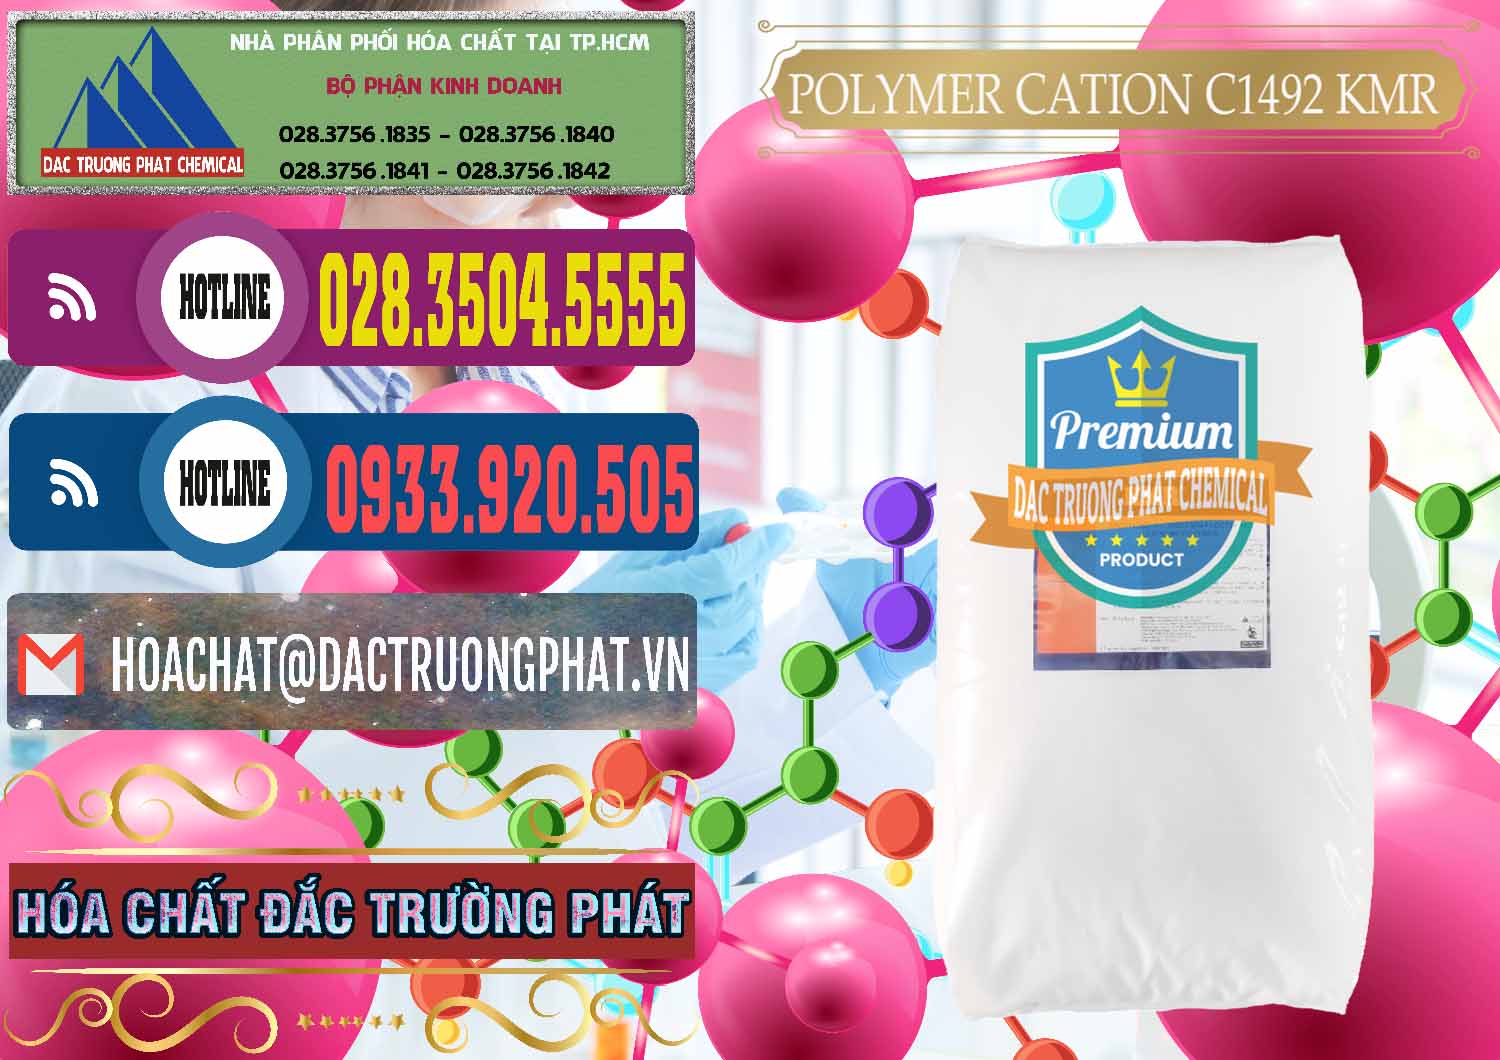 Đơn vị chuyên kinh doanh & bán Polymer Cation C1492 - KMR Anh Quốc England - 0121 - Cty cung cấp ( bán ) hóa chất tại TP.HCM - muabanhoachat.com.vn